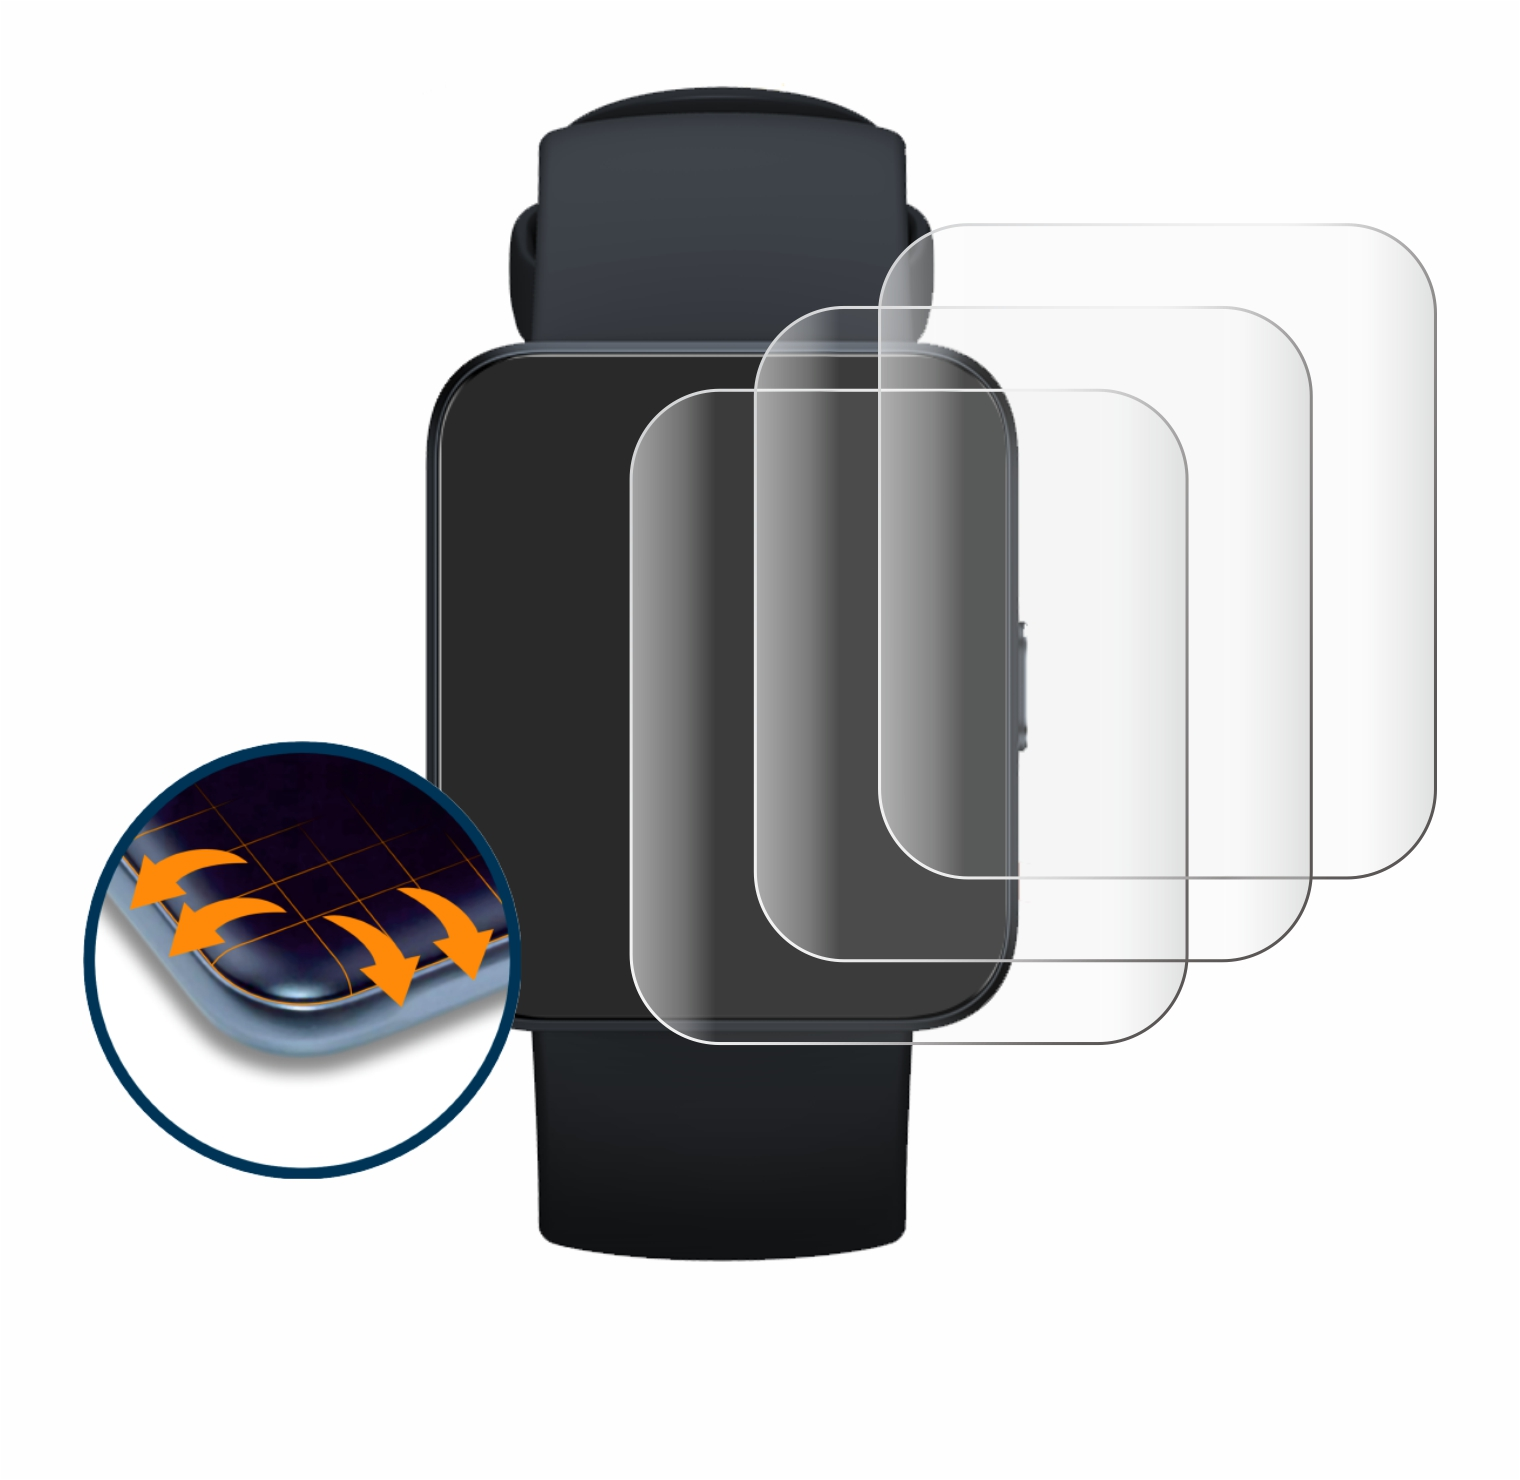 SAVVIES 4x Flex Watch Full-Cover 2 Lite) Xiaomi 3D Curved Redmi Schutzfolie(für